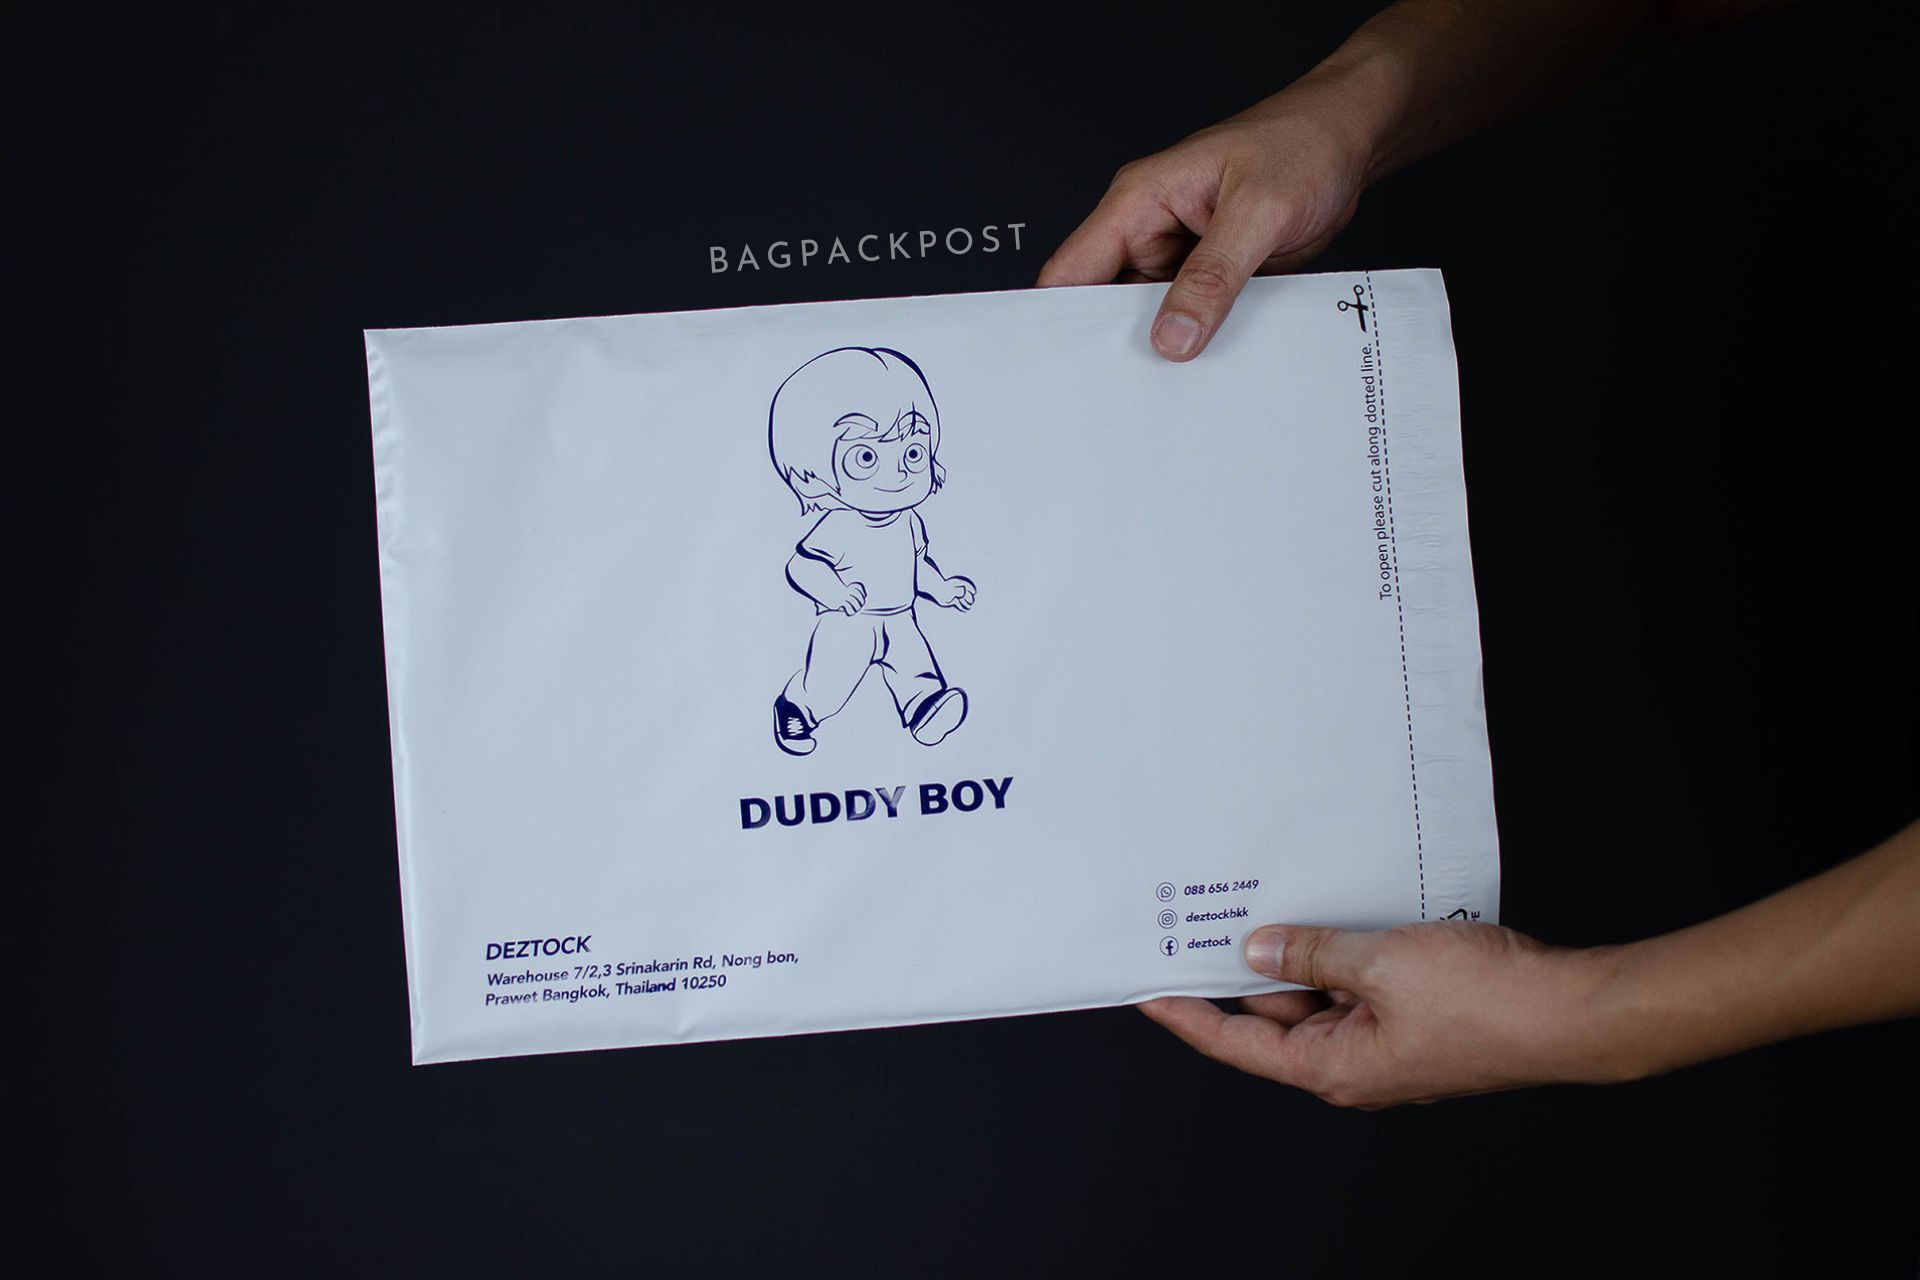 ผลิตถุงไปรษณีย์ ซองไปรษณีย์พิมพ์ลาย DUDDY BOY ซองไปรษณีย์สีขาว ถุงไปรษณีย์พิมพ์ลาย 3 BagPackPost